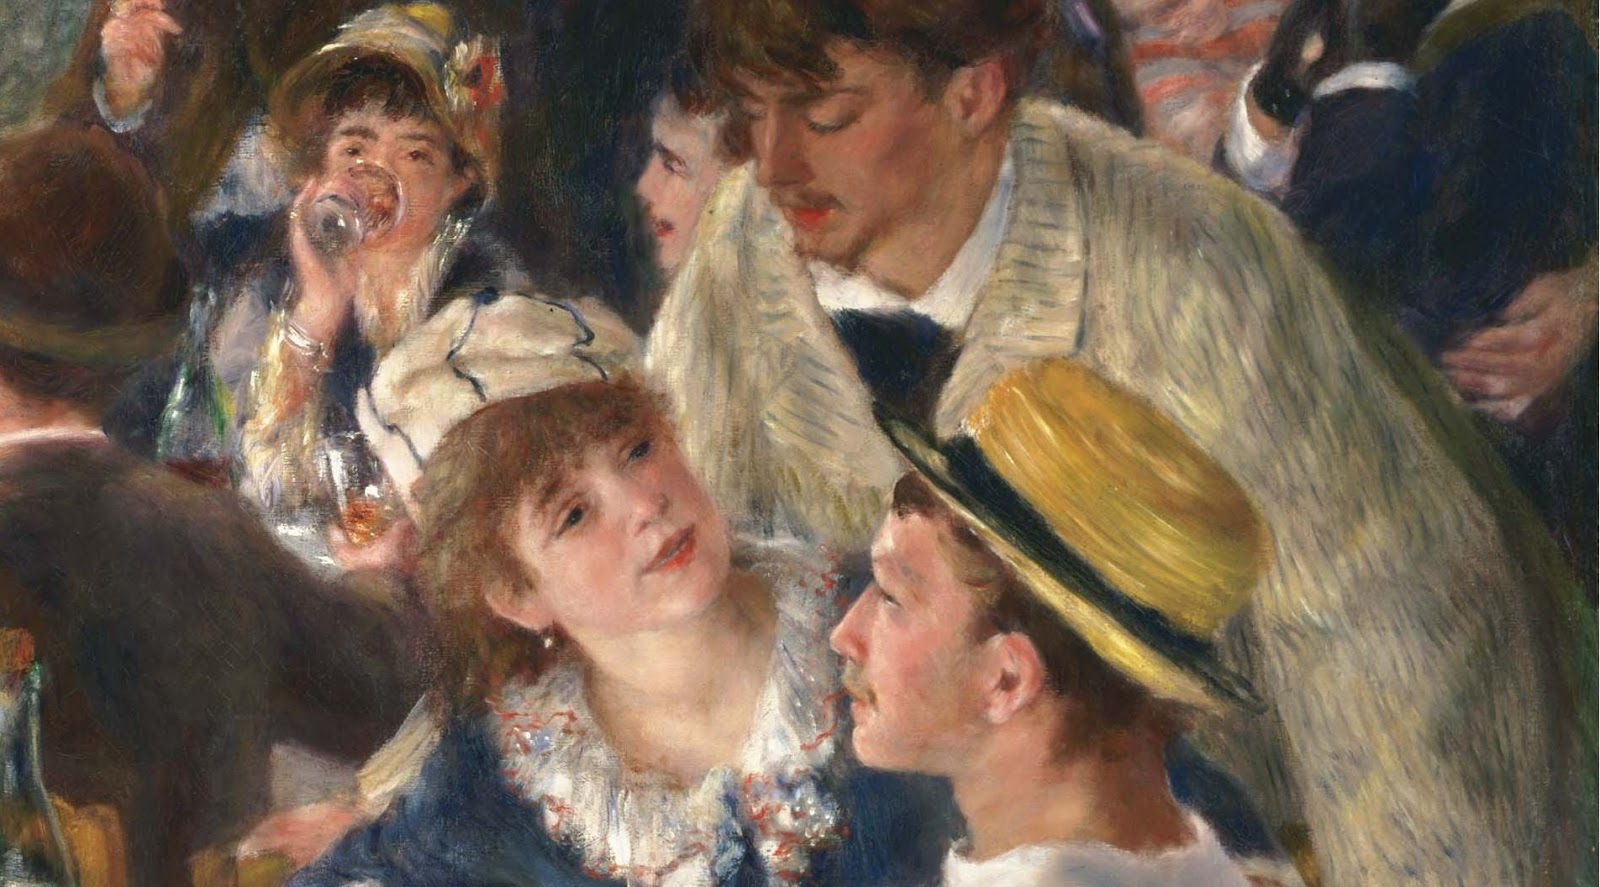 Pierre+Auguste+Renoir-1841-1-19 (577).JPG